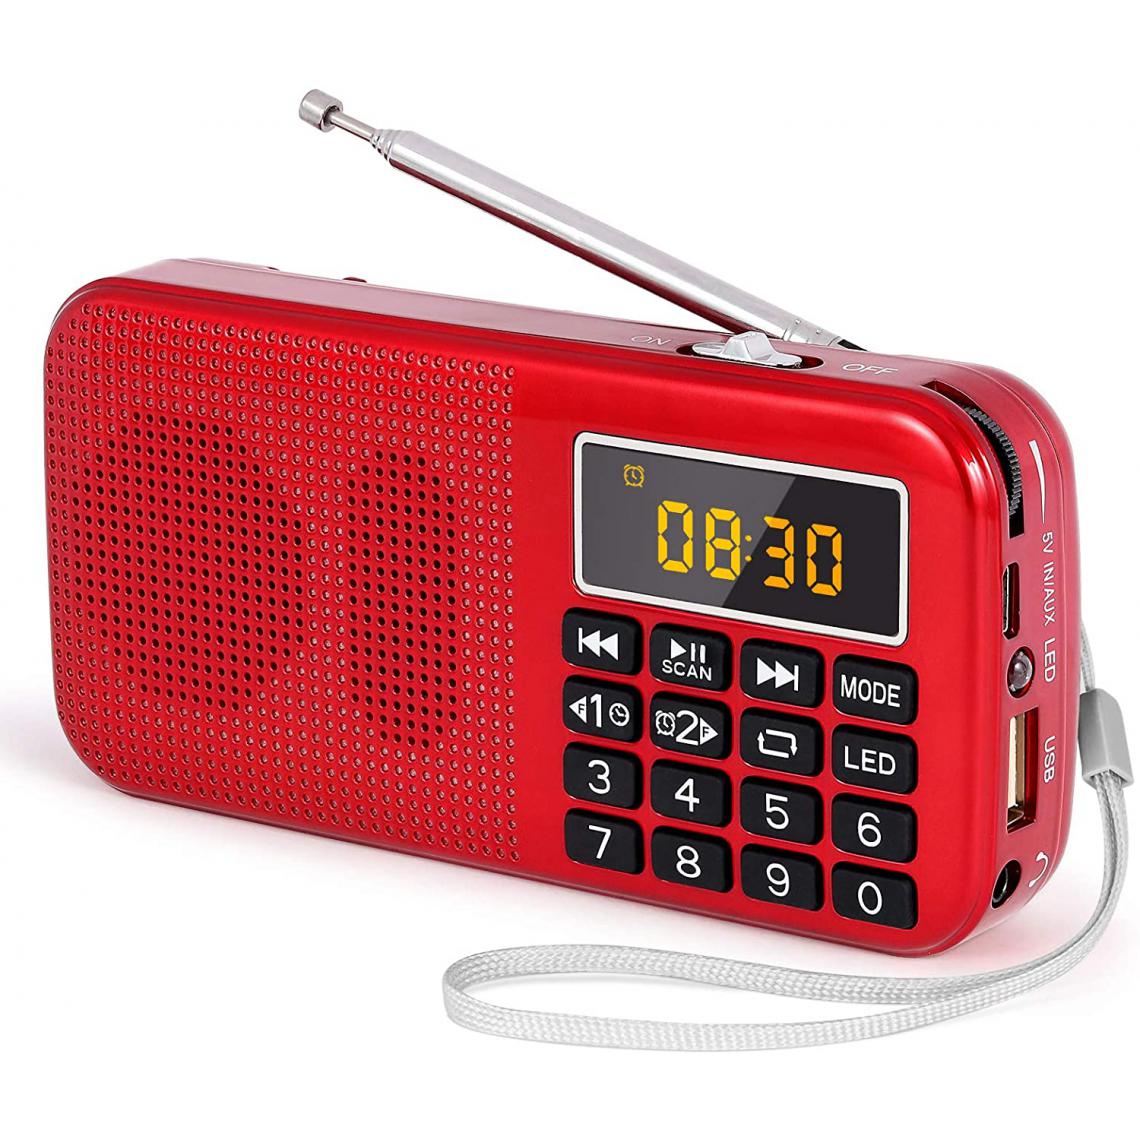 Prunus - radio portable MP3 SD USB AUX avec batterie rechargeable de grande capacité (3000mAh) rouge - Radio